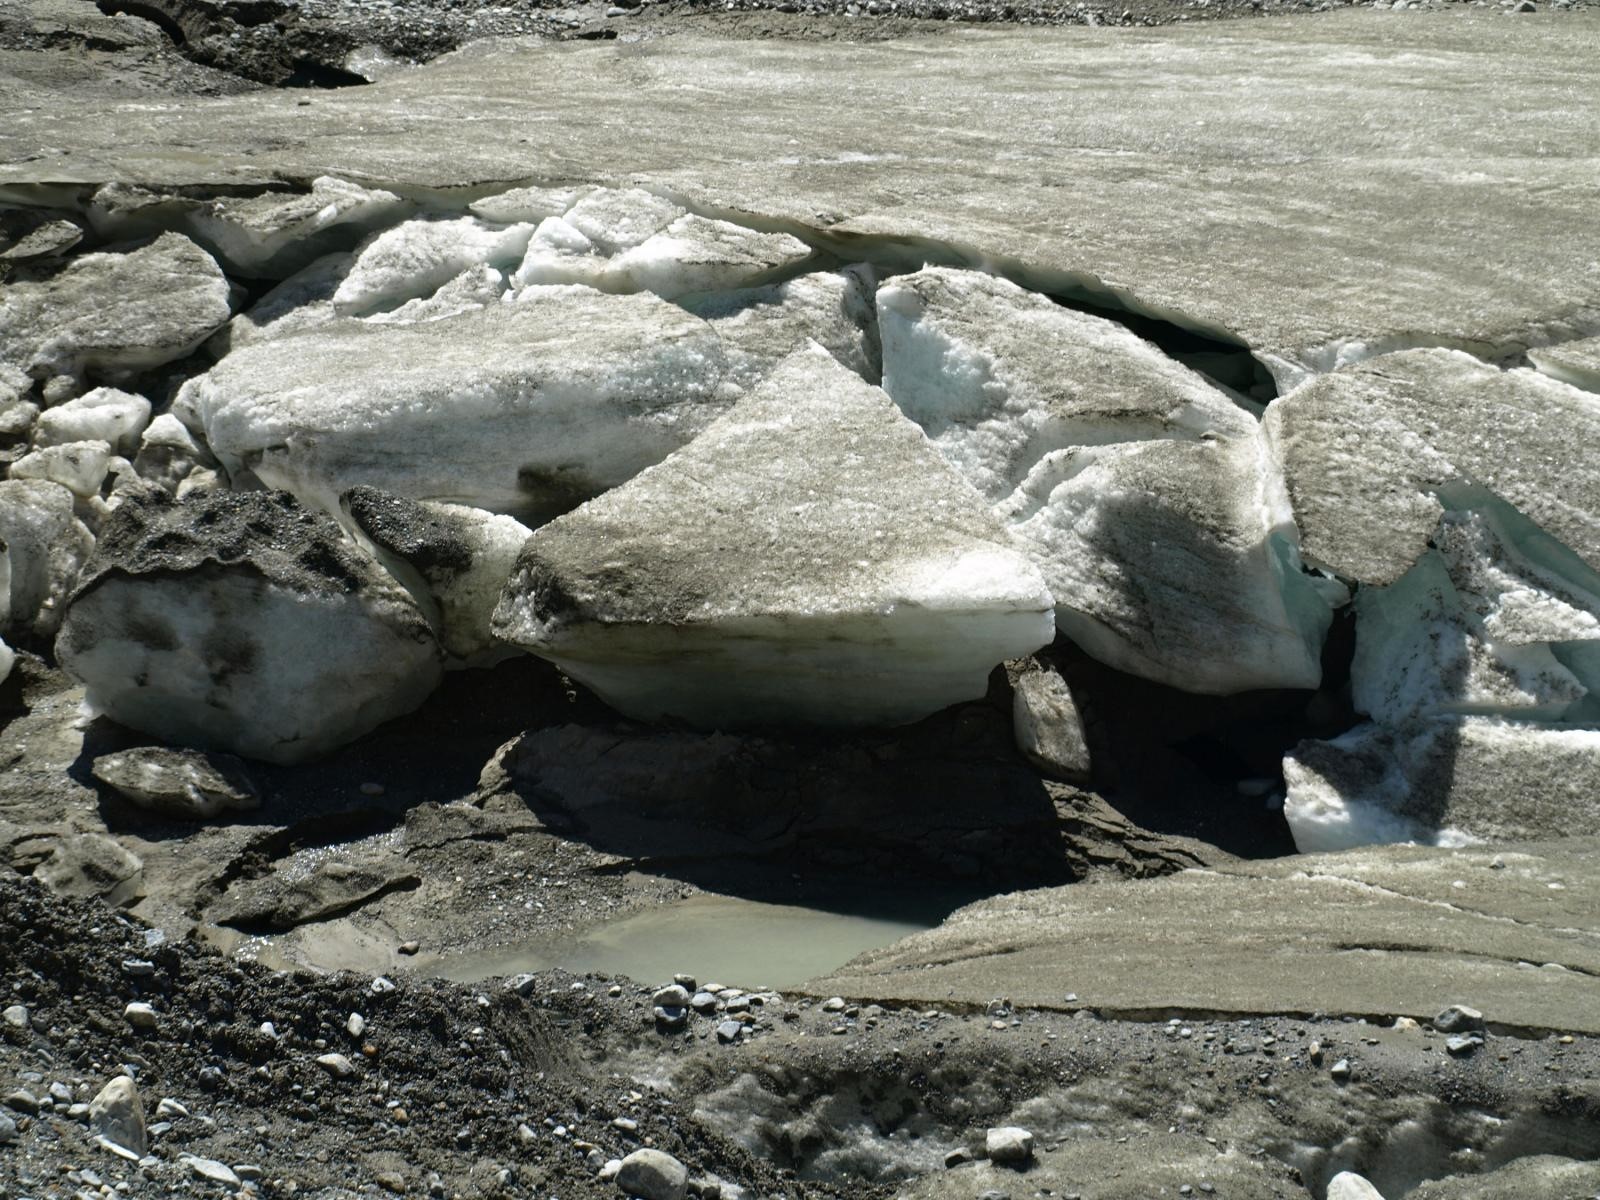 18.07.2012., Nacionalni park Hohe Tauern, Austrija - Ledenjak Pasterze je najduzi ledenjak u Austriji, a ujedno i povrsinom najveci u Istocnim Alpama. Dugacak je oko 9 kilometara, a proteze se od 2100 metara do 3453 metra nadmorske visine. Ledenjak je zbog globalnog zatopljenja svake godine za 10-tak metara kraci. 
Photo: Matija Topolovec/PIXSELL